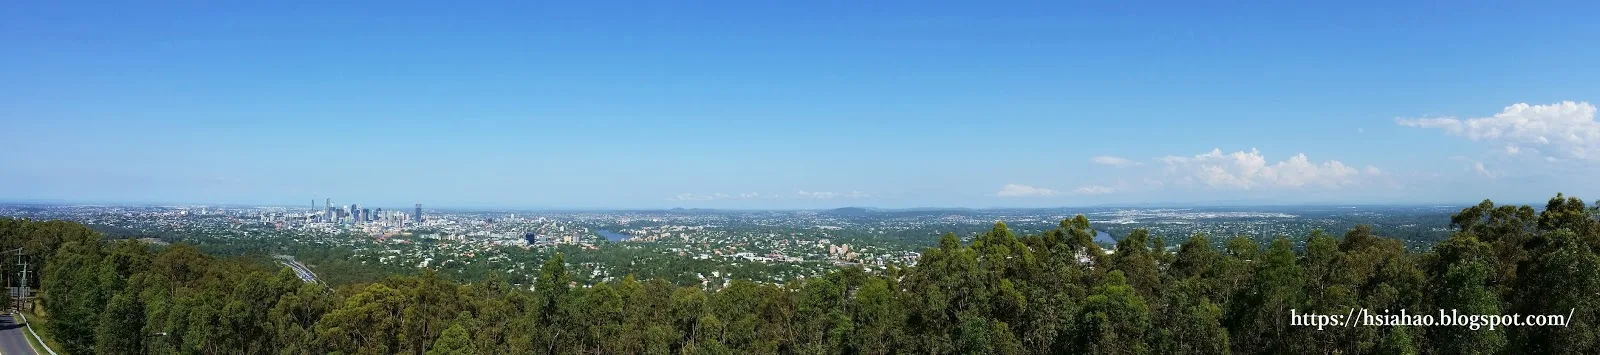 布里斯本-景點-庫薩山-市區-遊記-庫薩山觀景台-行程-Mt. Coot-Tha-Summit-Lookout-Brisbane